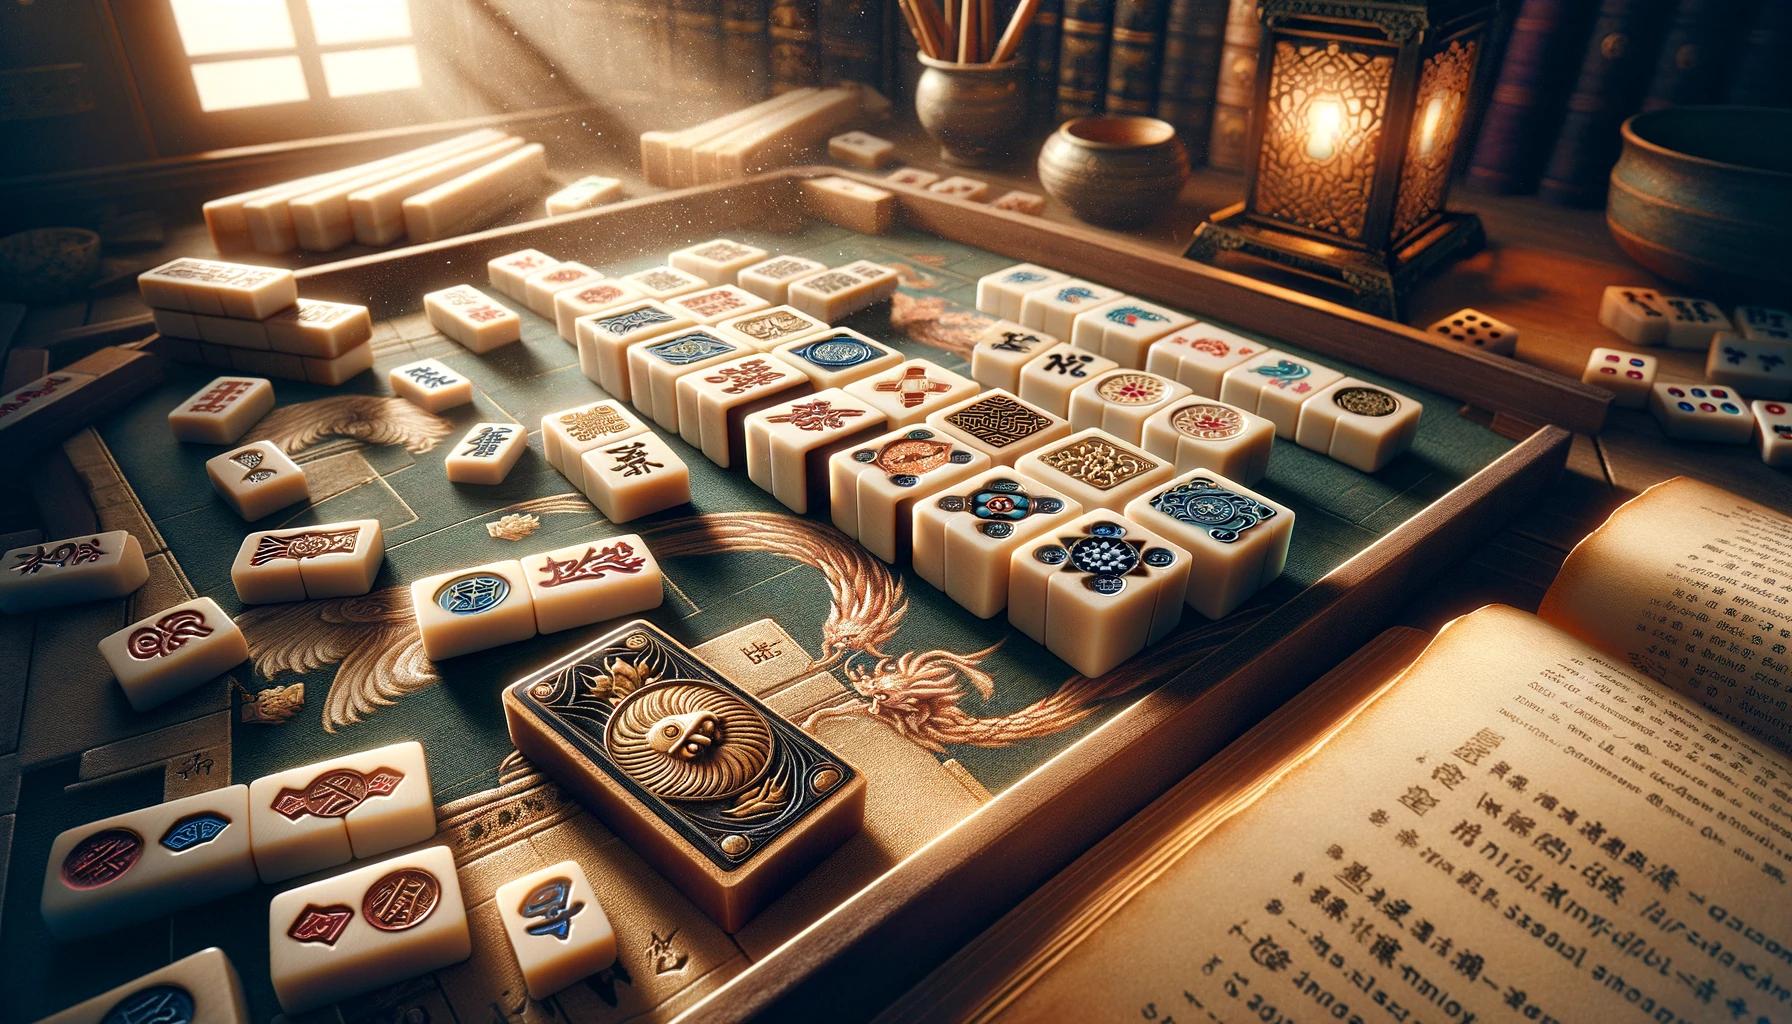 Todo sobre Mahjong: Actualizaciones, Eventos, Guías, Consejos y Datos Interesantes.